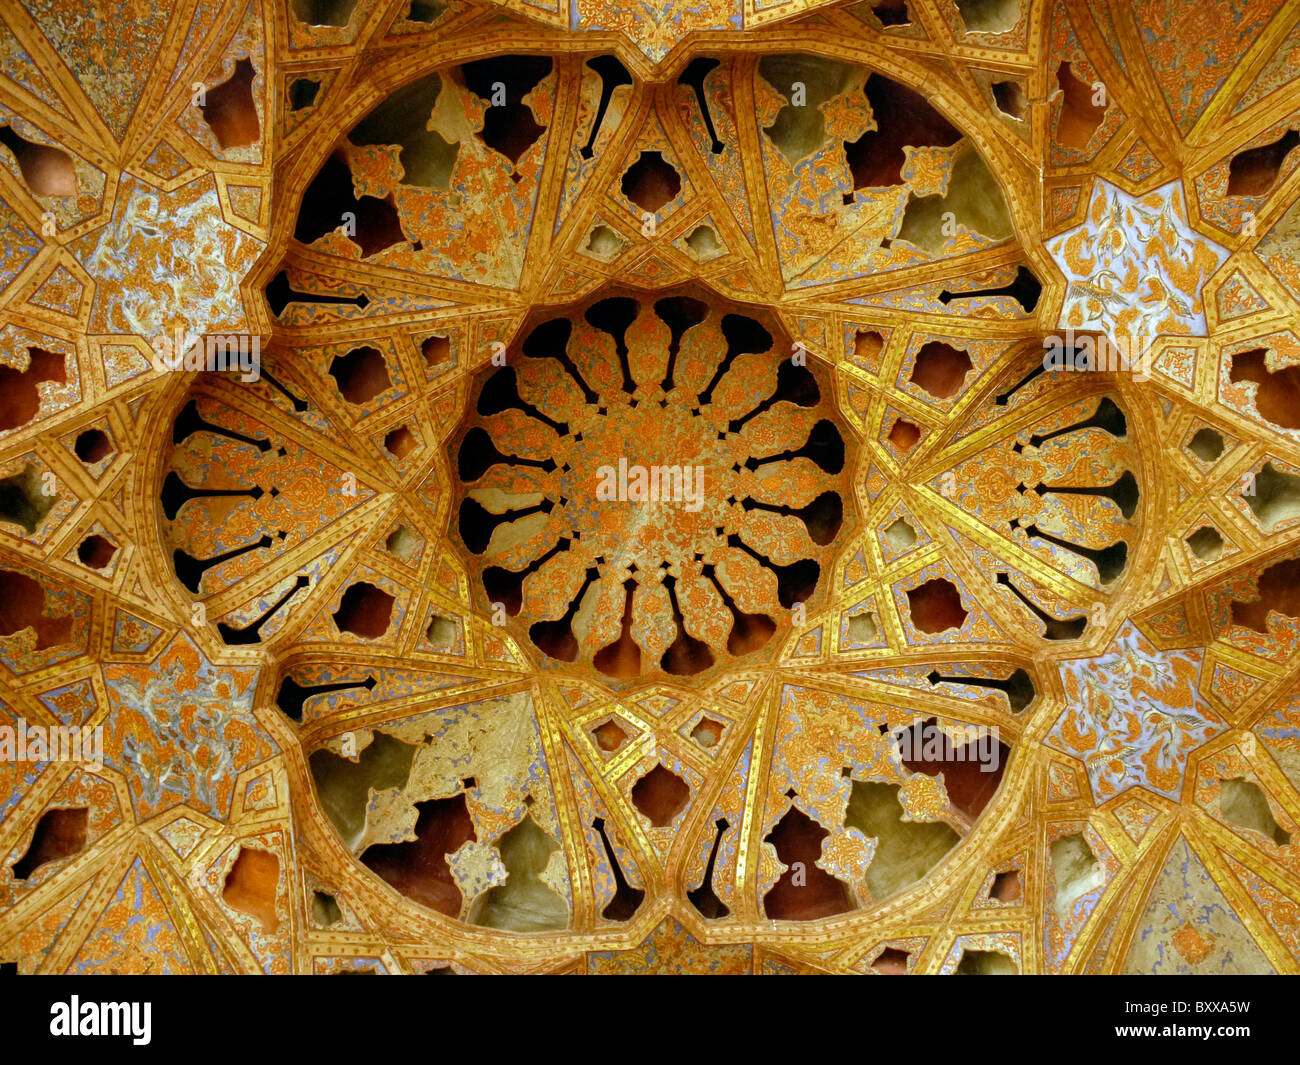 Ornements en stuc toit du palais Ali Qapu, Ispahan, Iran Banque D'Images